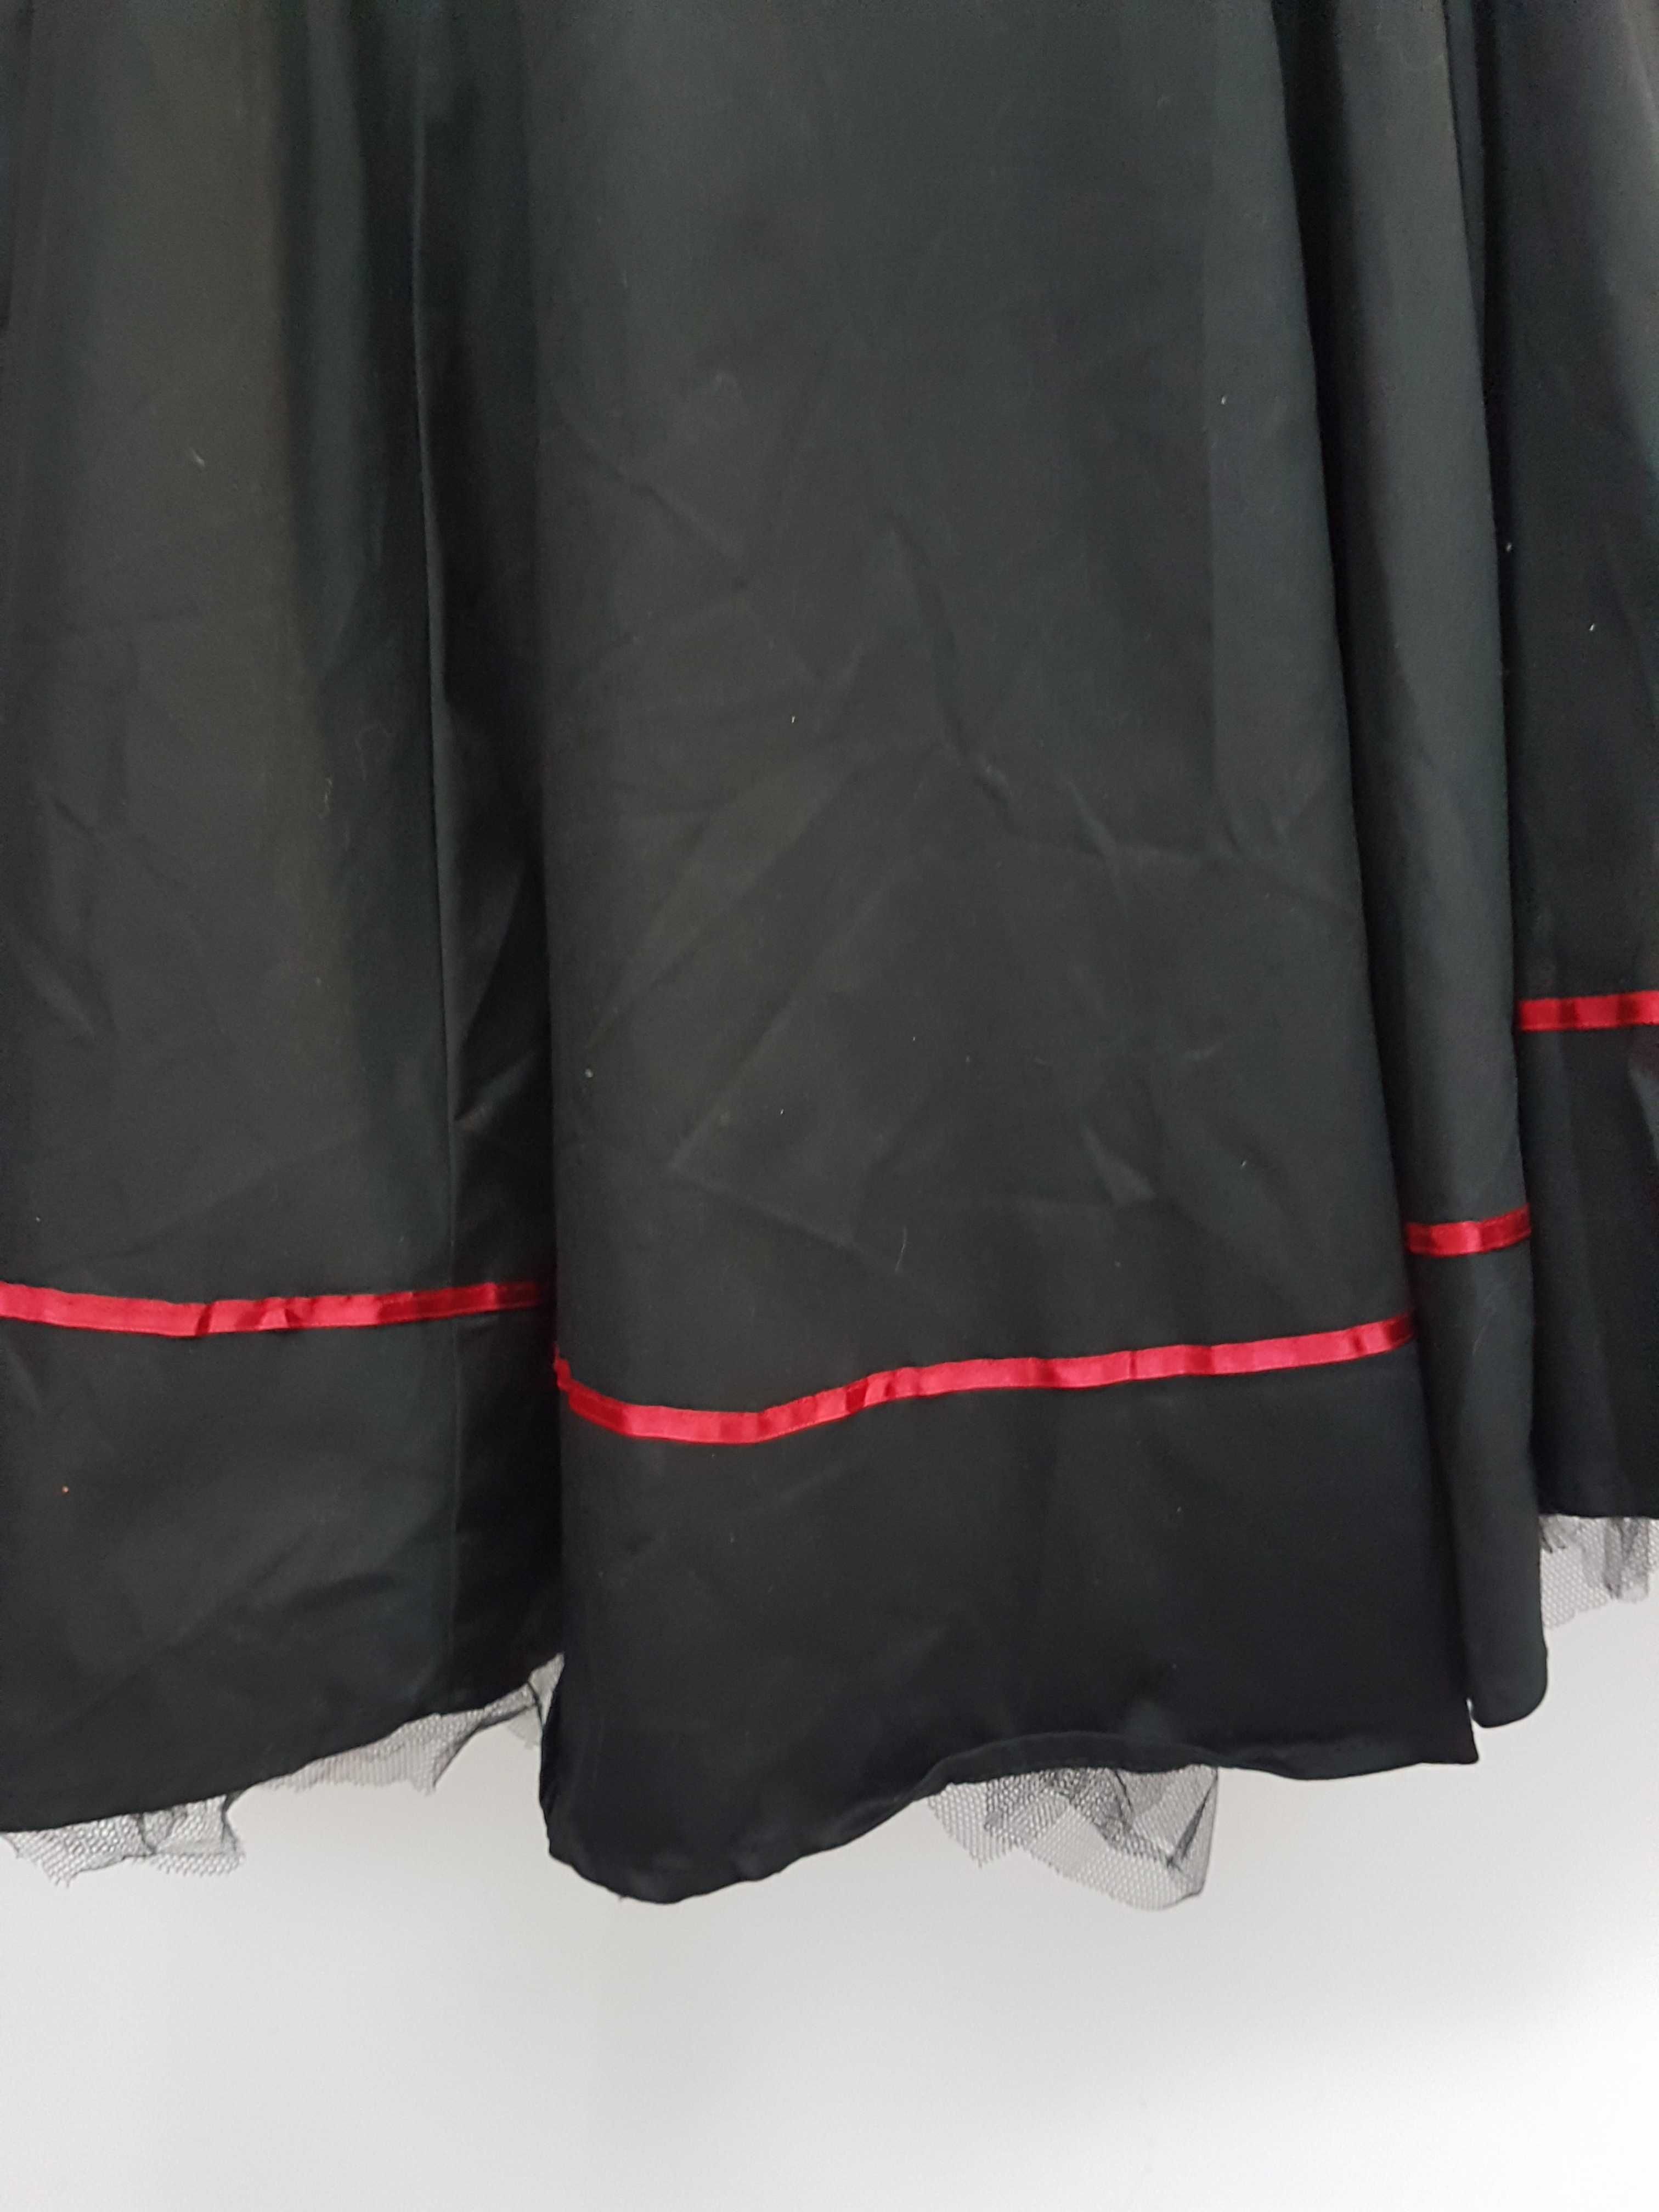 Sukienka Pin Up Gothic czarna z czerwonymi lamówkami rozmiar 44 A2019